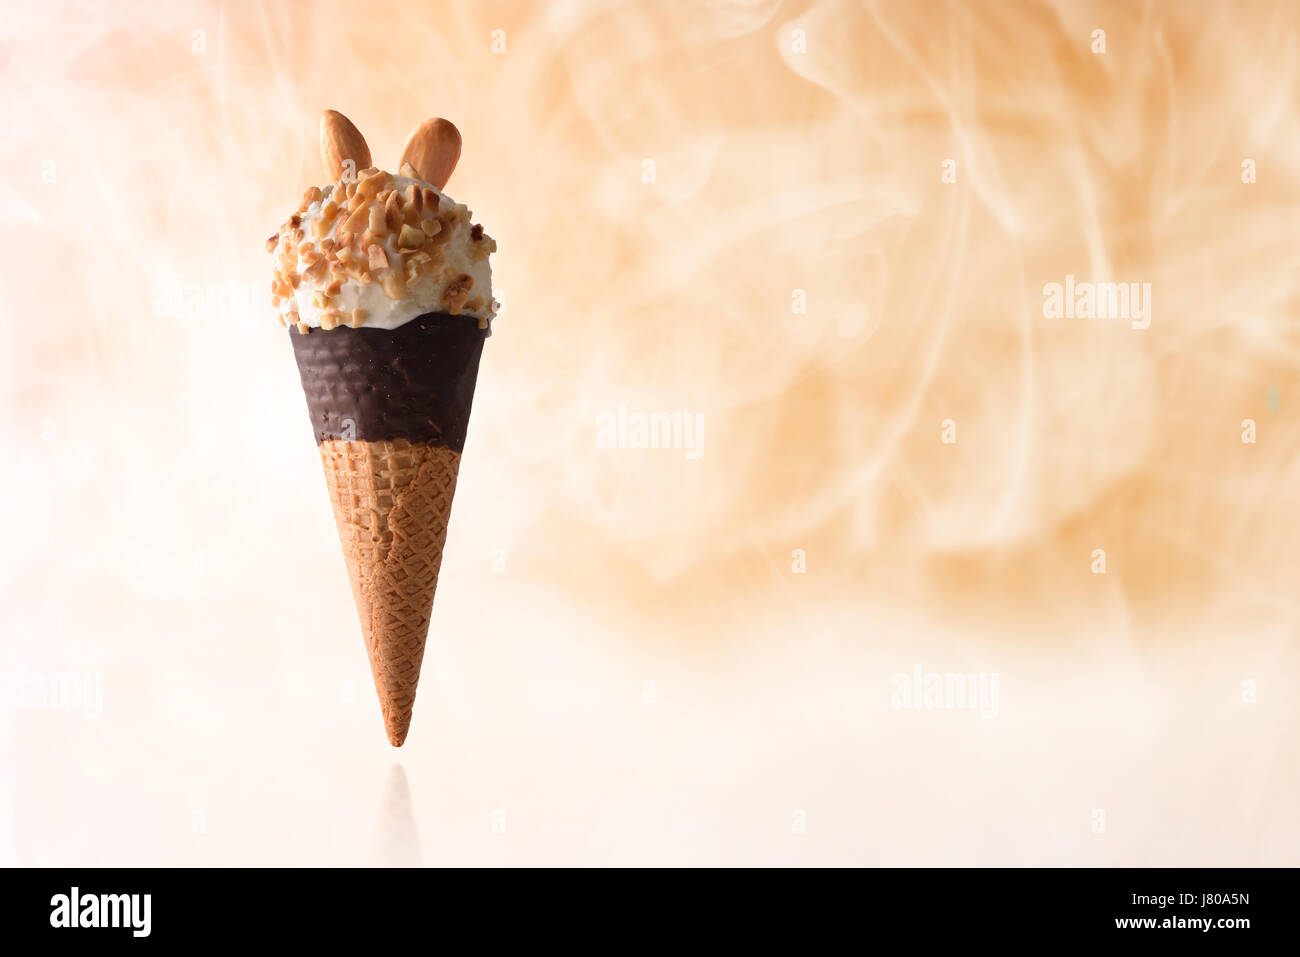 Ice Cream cone aromatisierte Sahne Mandel. Erhöhten auf reflektierenden Tisch und garniert mit kleinen Stücken von Mandeln. Mit orangem Hintergrund und kaltem Dampf. H Stockfoto